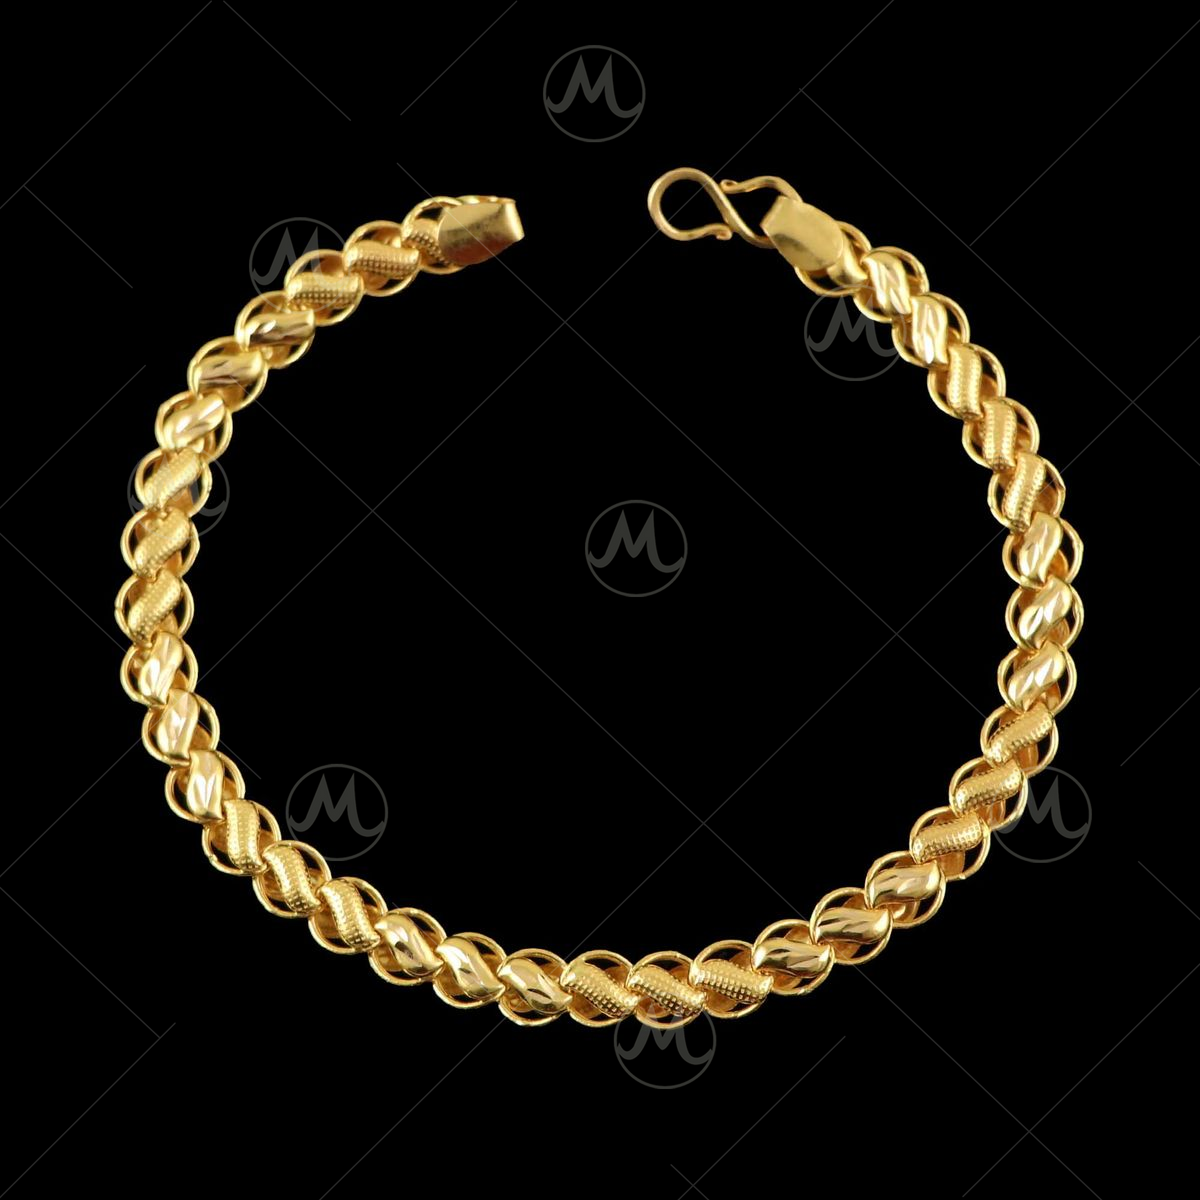 Buy Elegant Star Design Stone Rose Gold Bracelet for Women